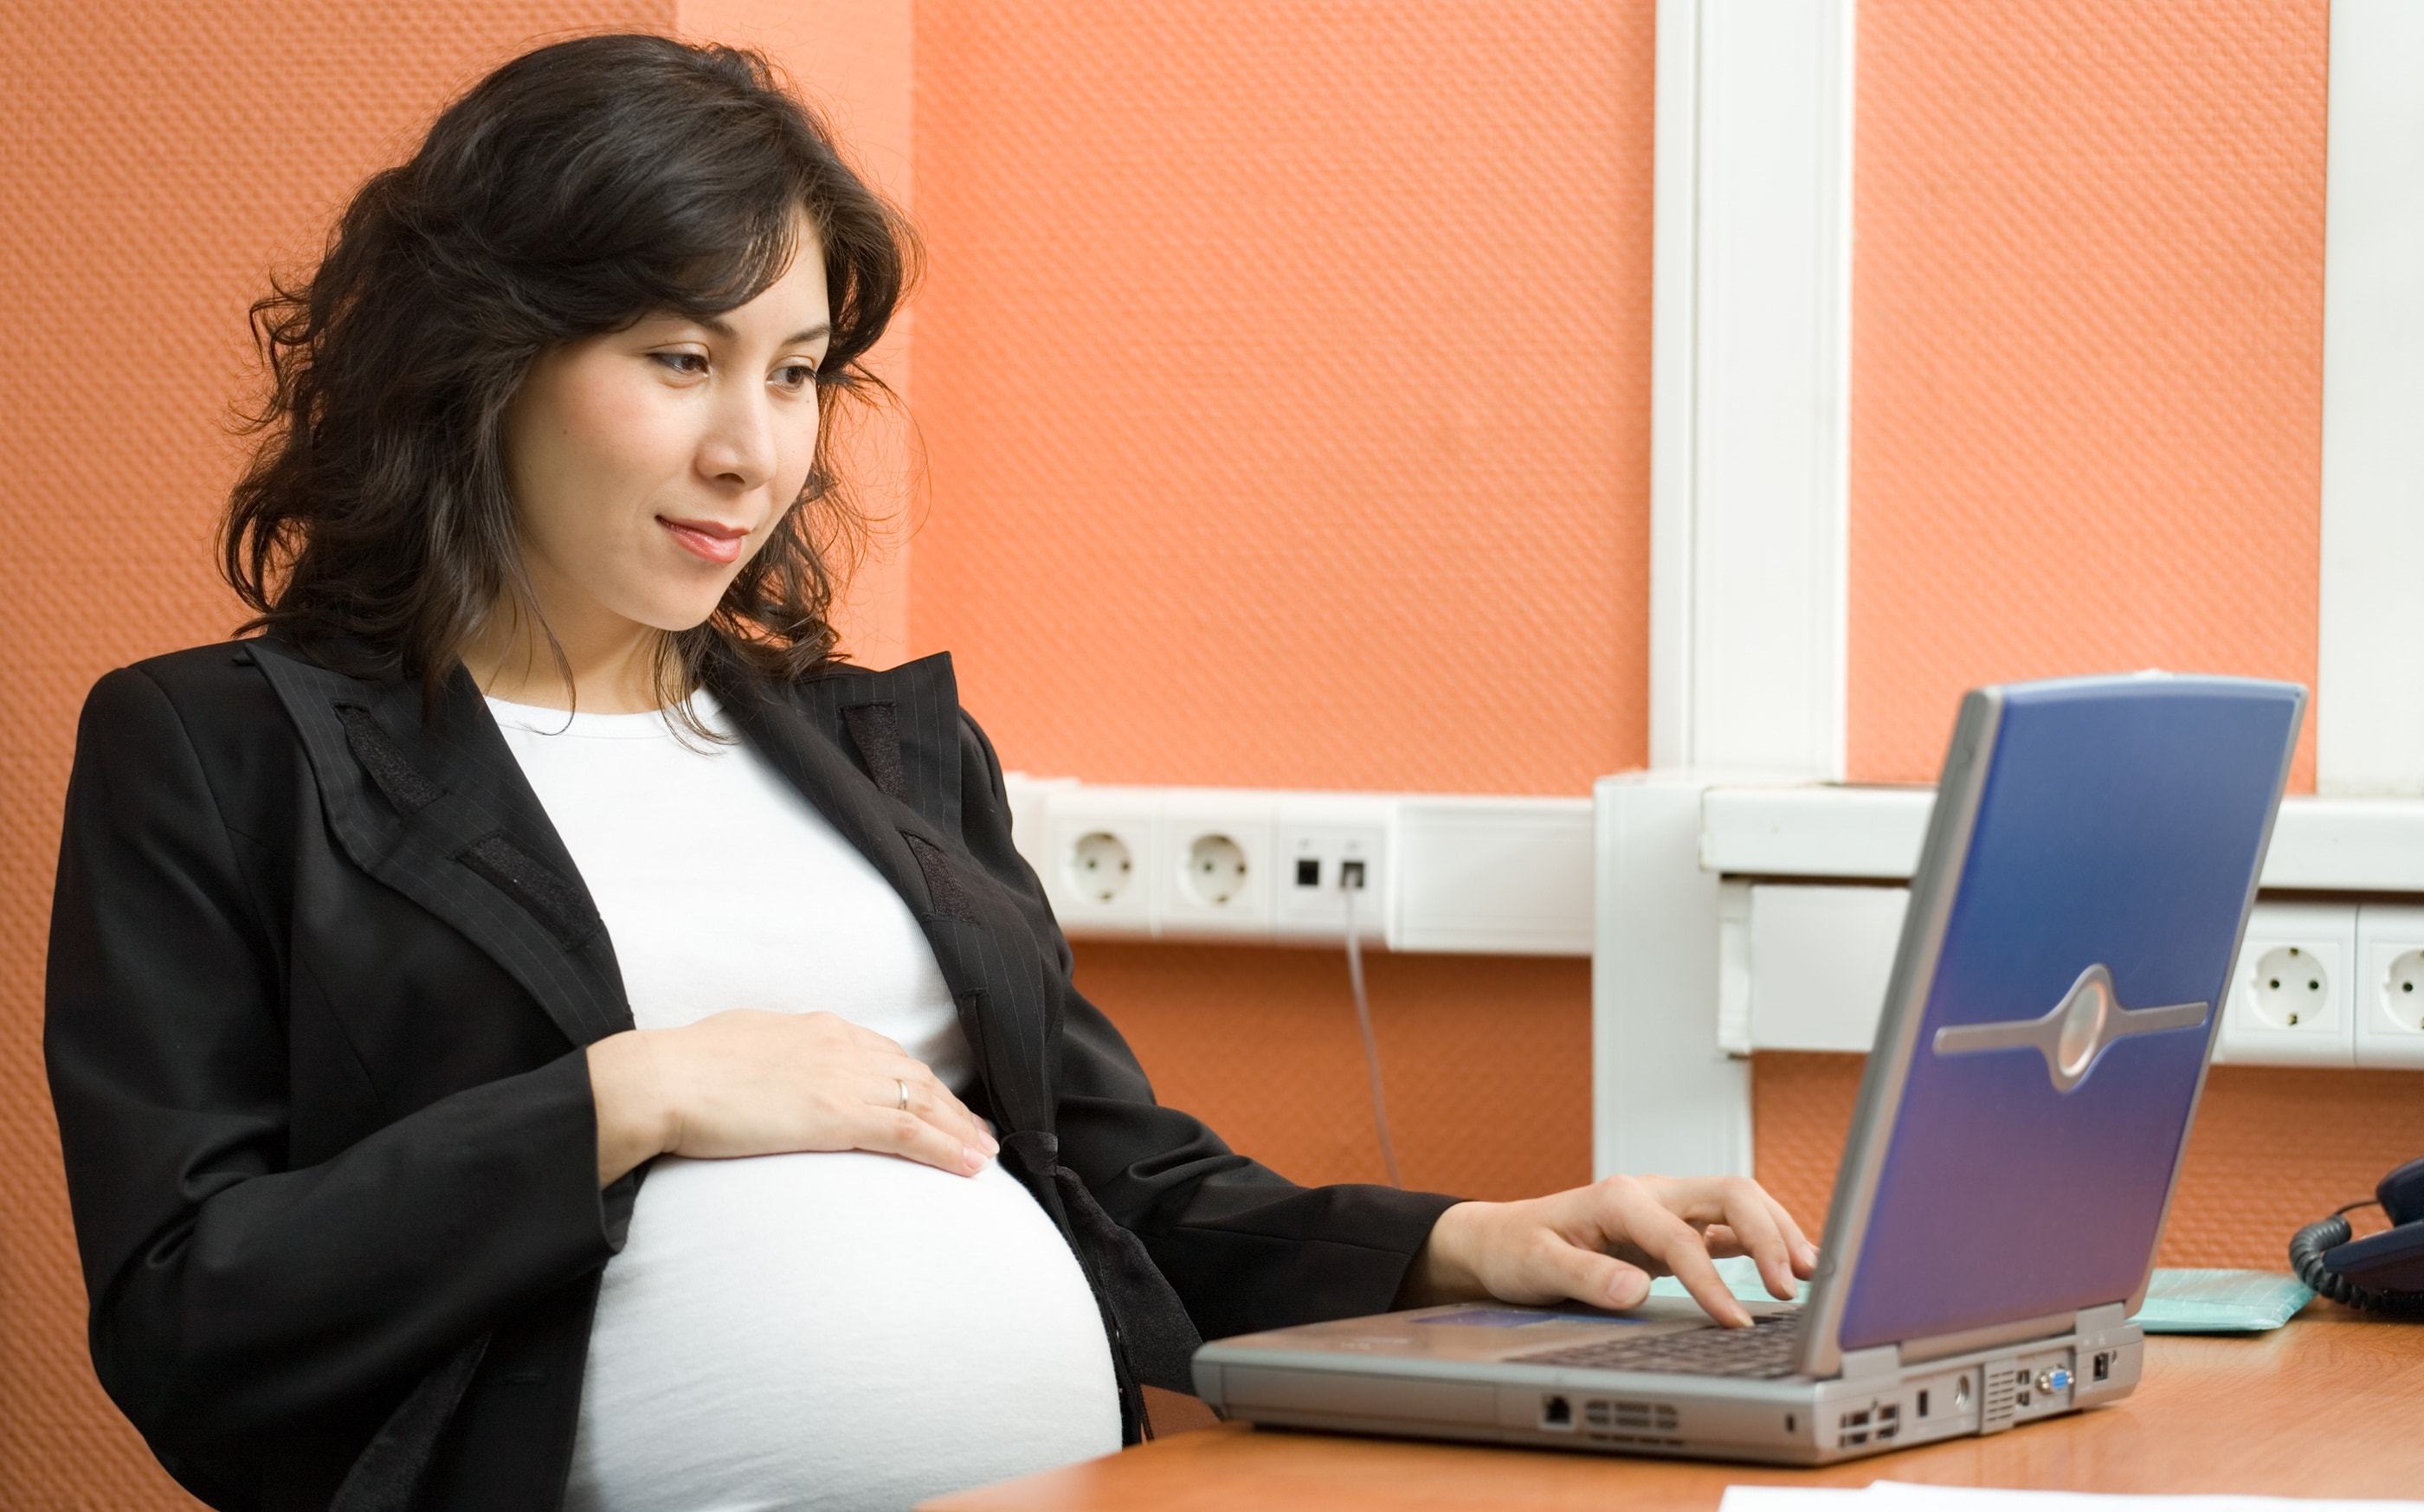 Quyền lợi của phụ nữ mang thai và nuôi con nhỏ khi đi làm ai cũng cần biết 1